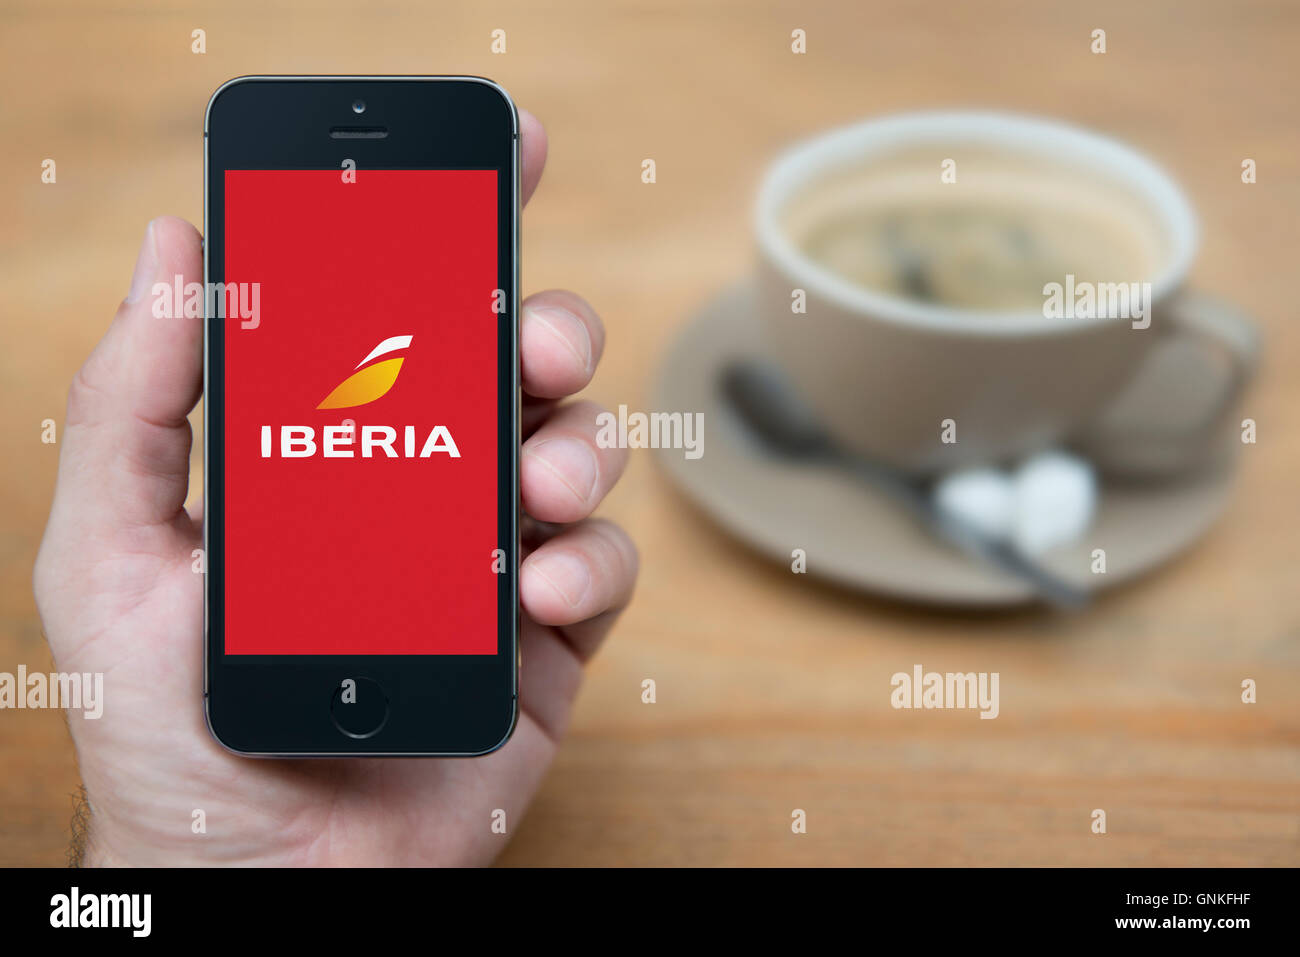 Un hombre mira su iPhone que muestra el logotipo de la aerolínea Iberia, mientras que se sentó con una taza de café (uso Editorial solamente). Foto de stock